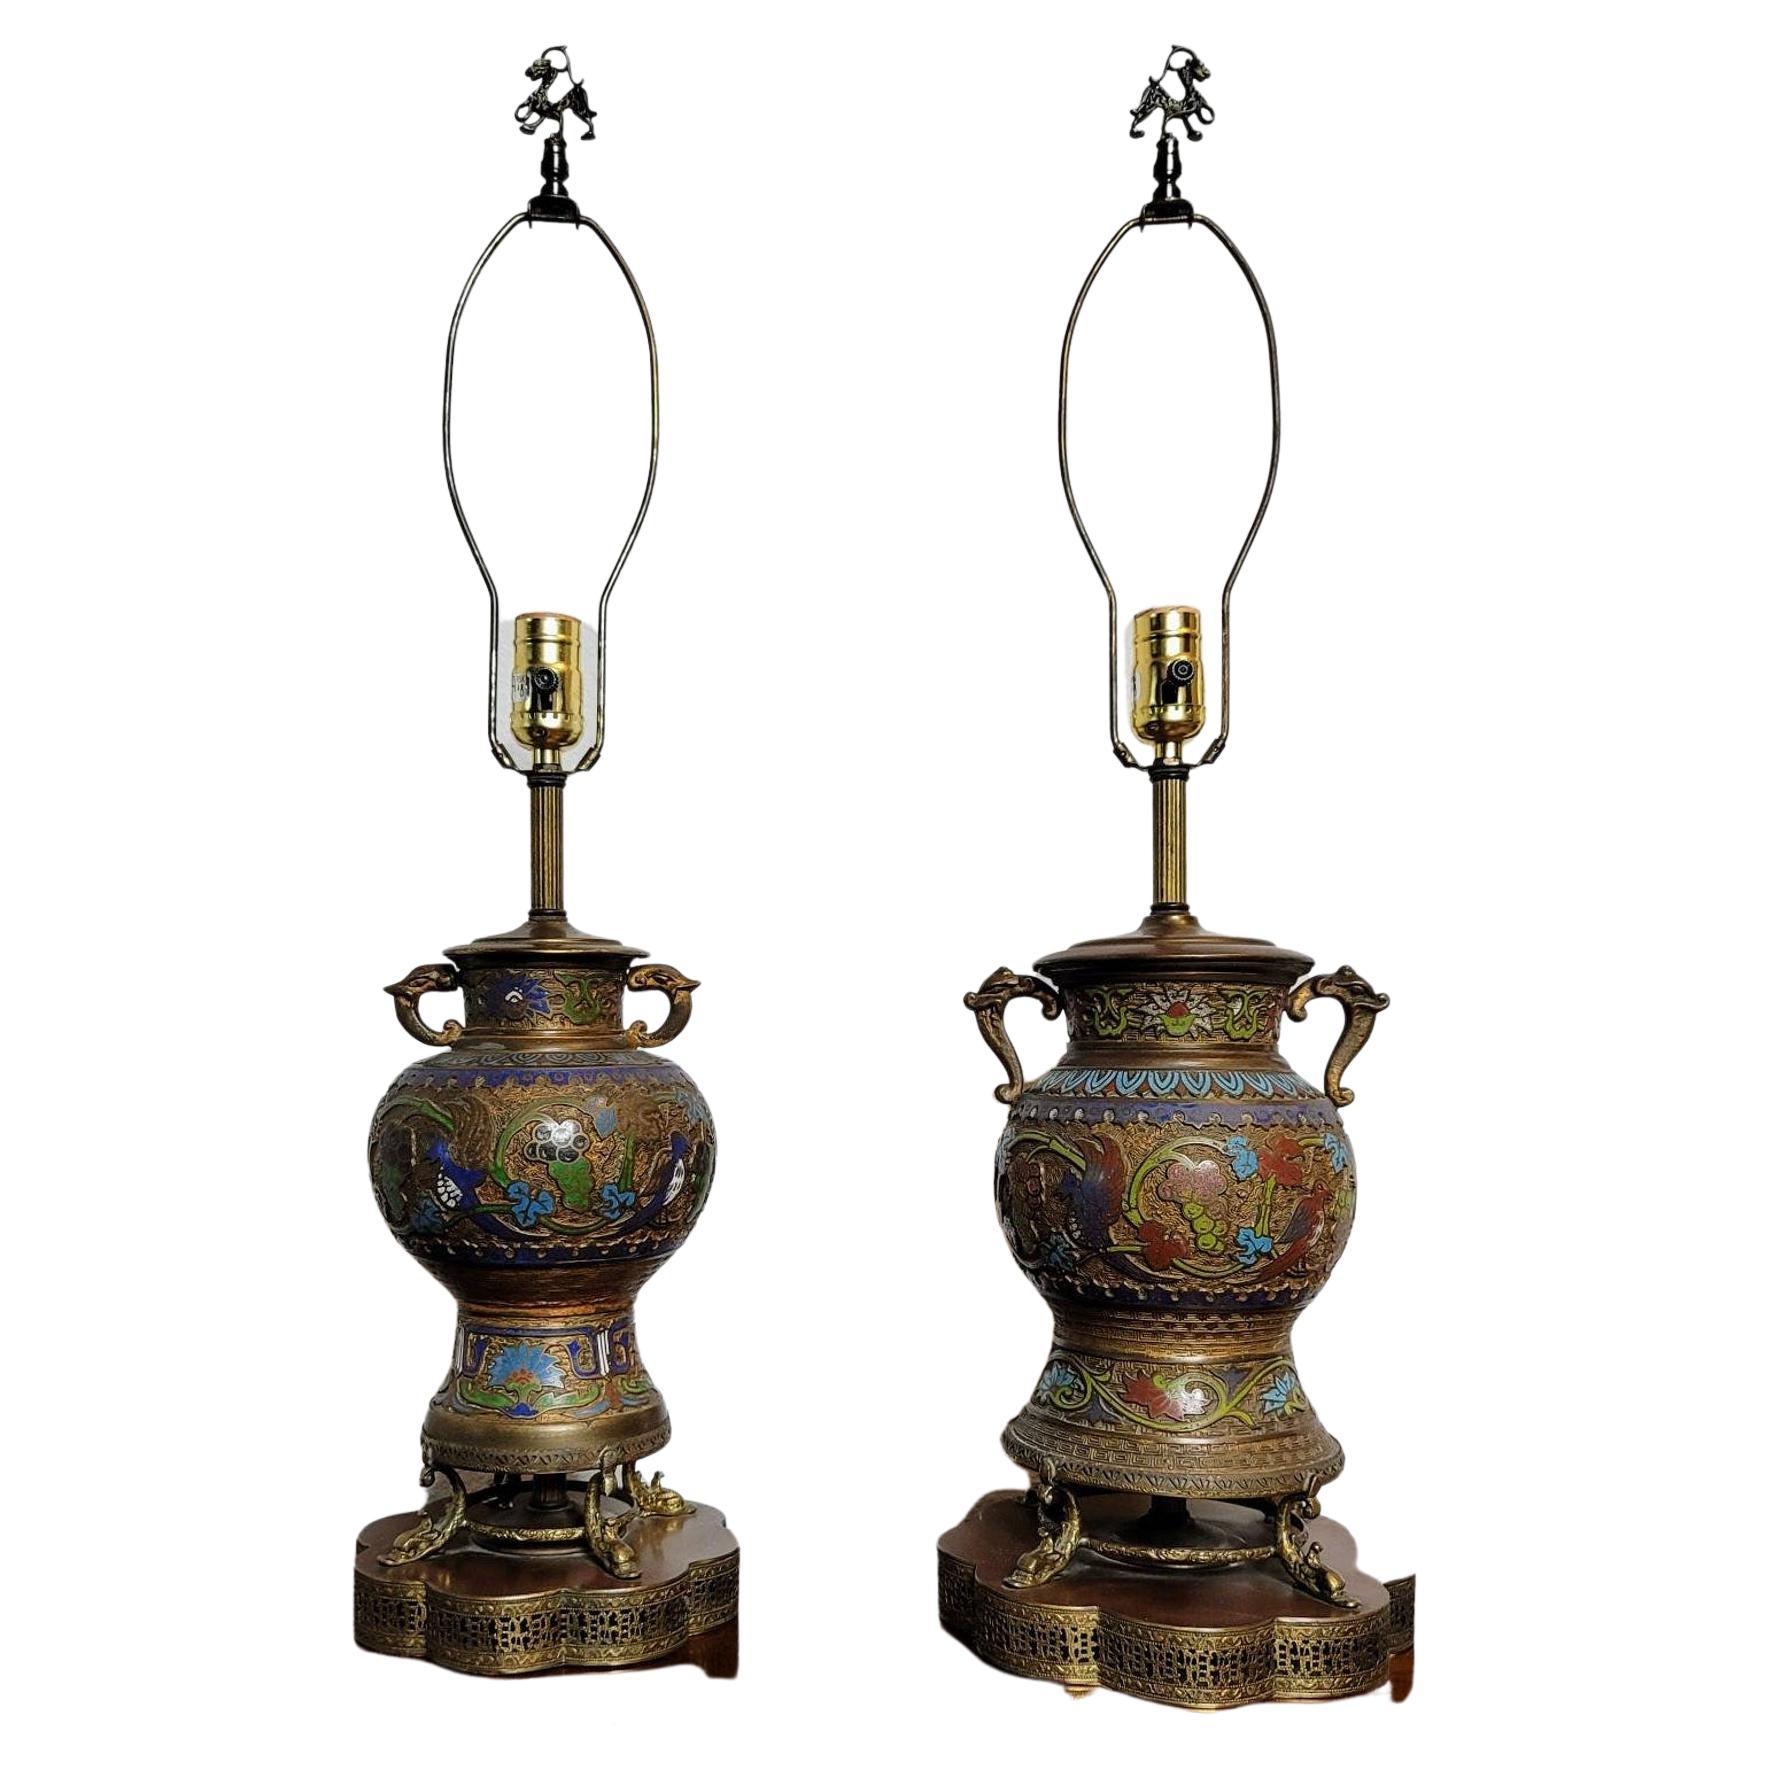 Paire d'urnes asiatiques anciennes en bronze émaillé "Champleve" façonnées en lampes de table